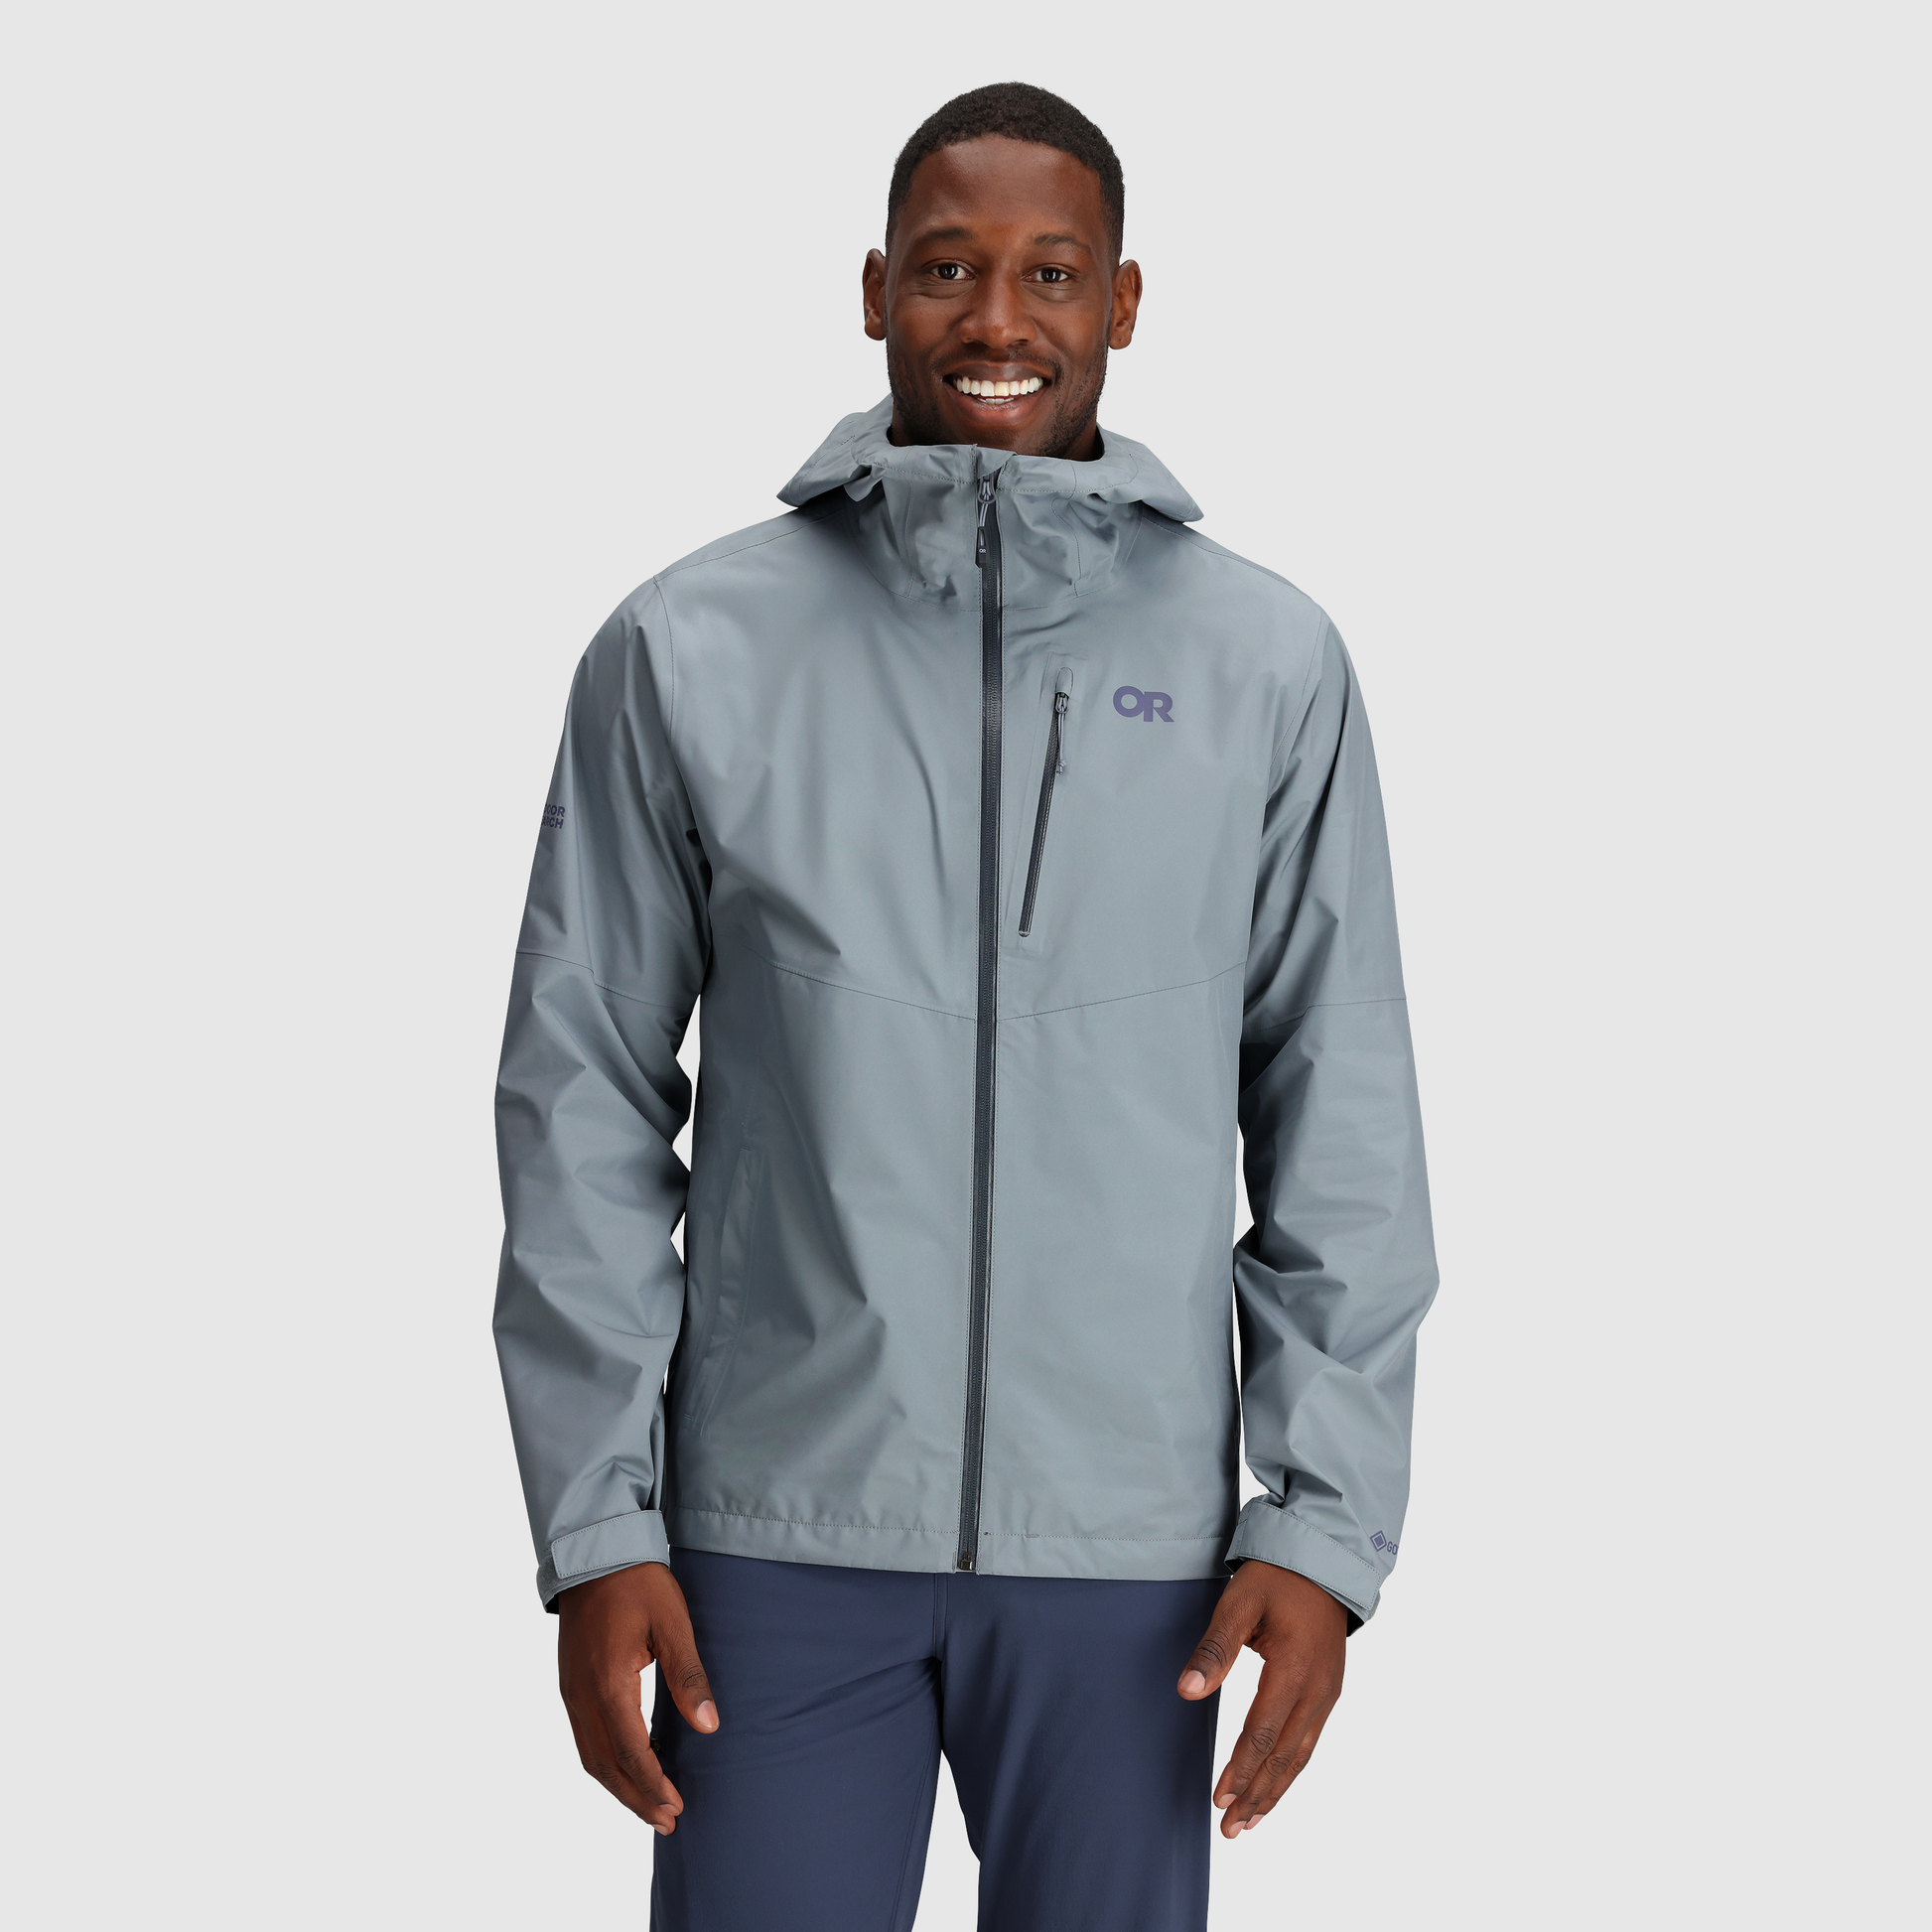 Outdoor windproof waterproof multi-function men's jacket